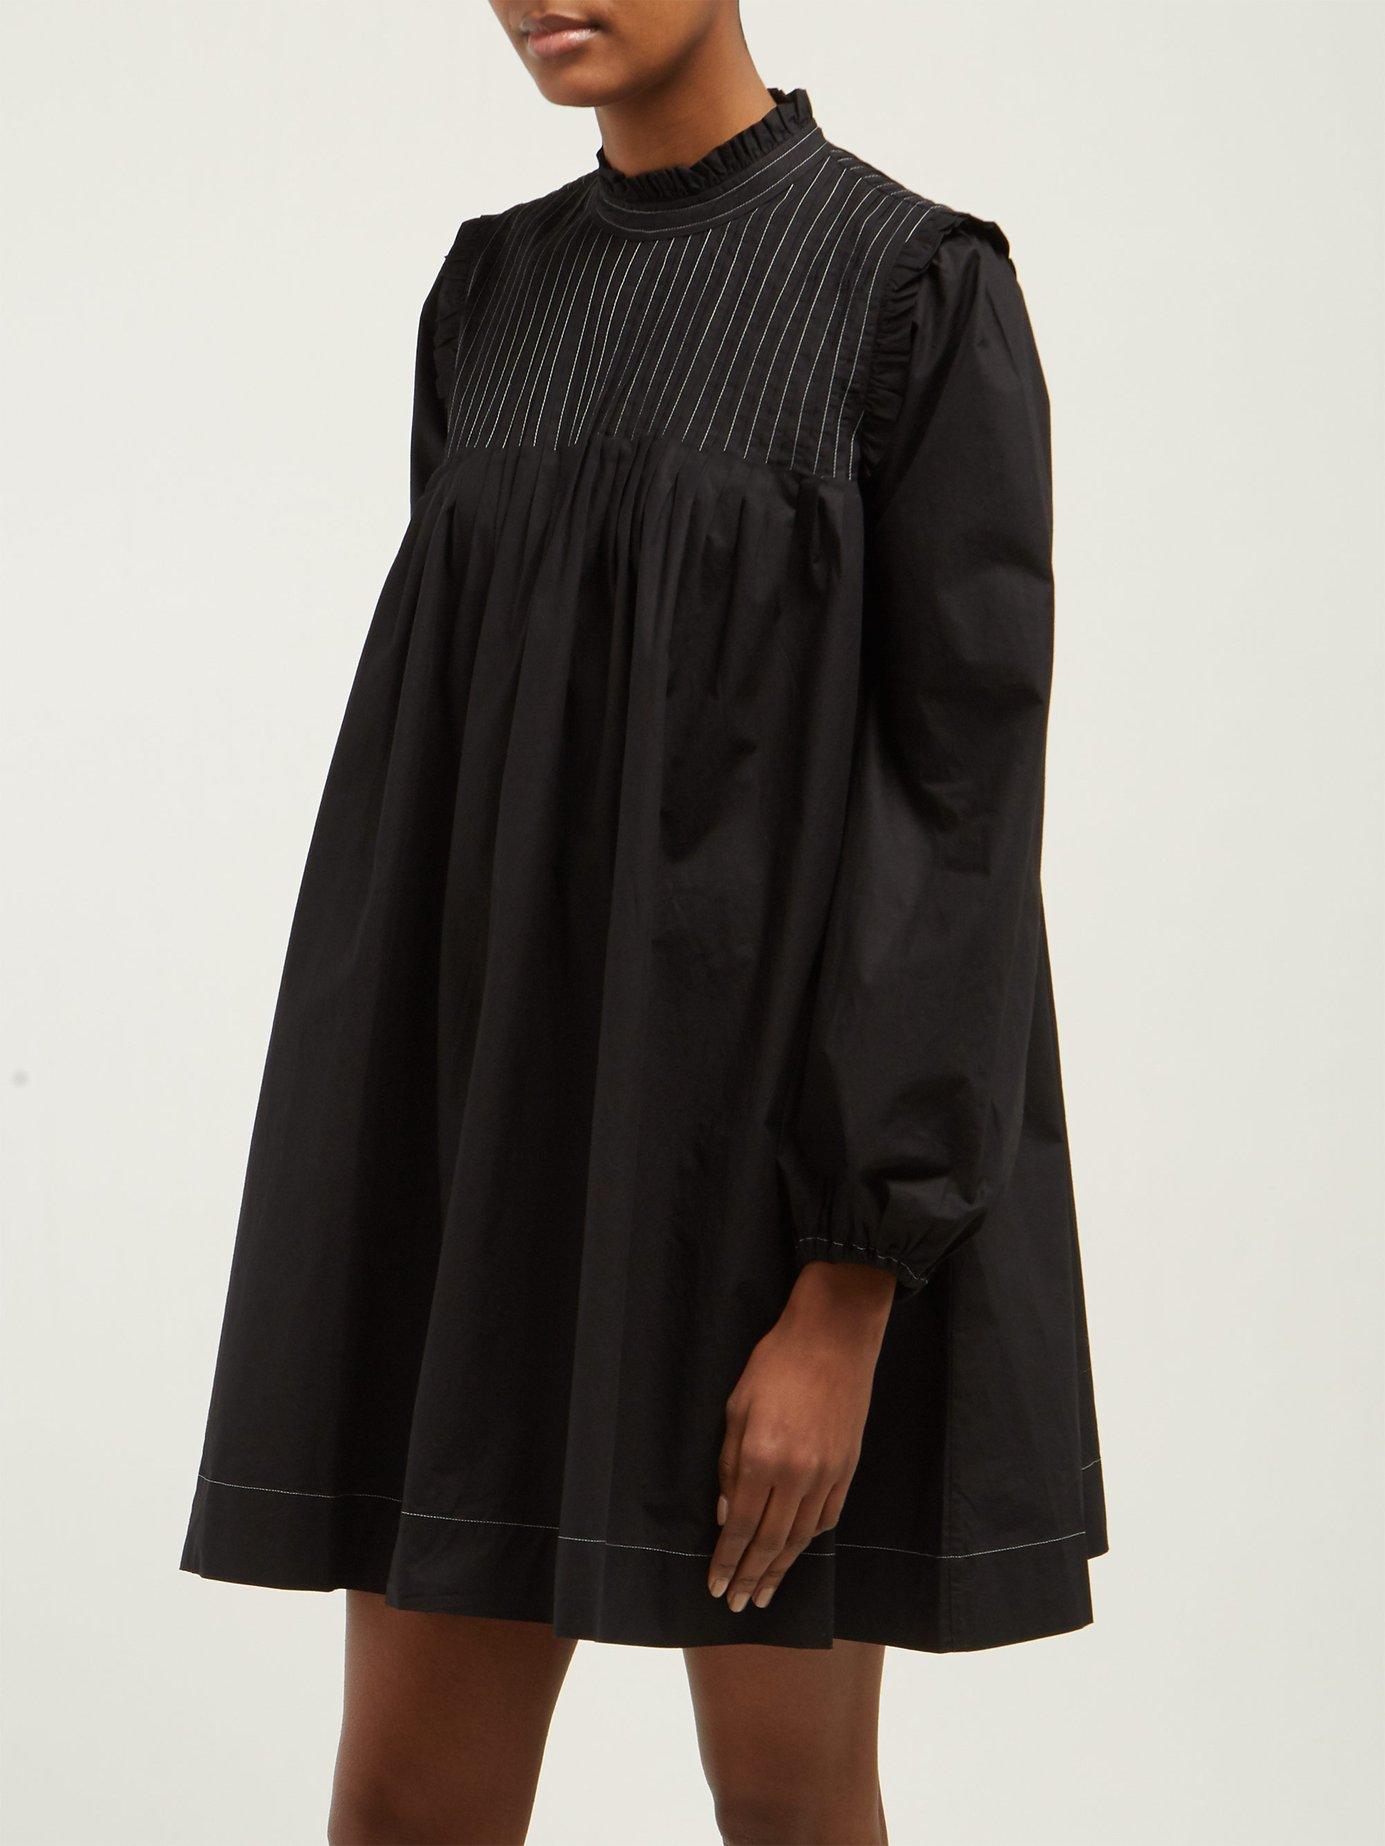 Ganni Slate Pintucked Cotton Poplin Dress in Black - Lyst